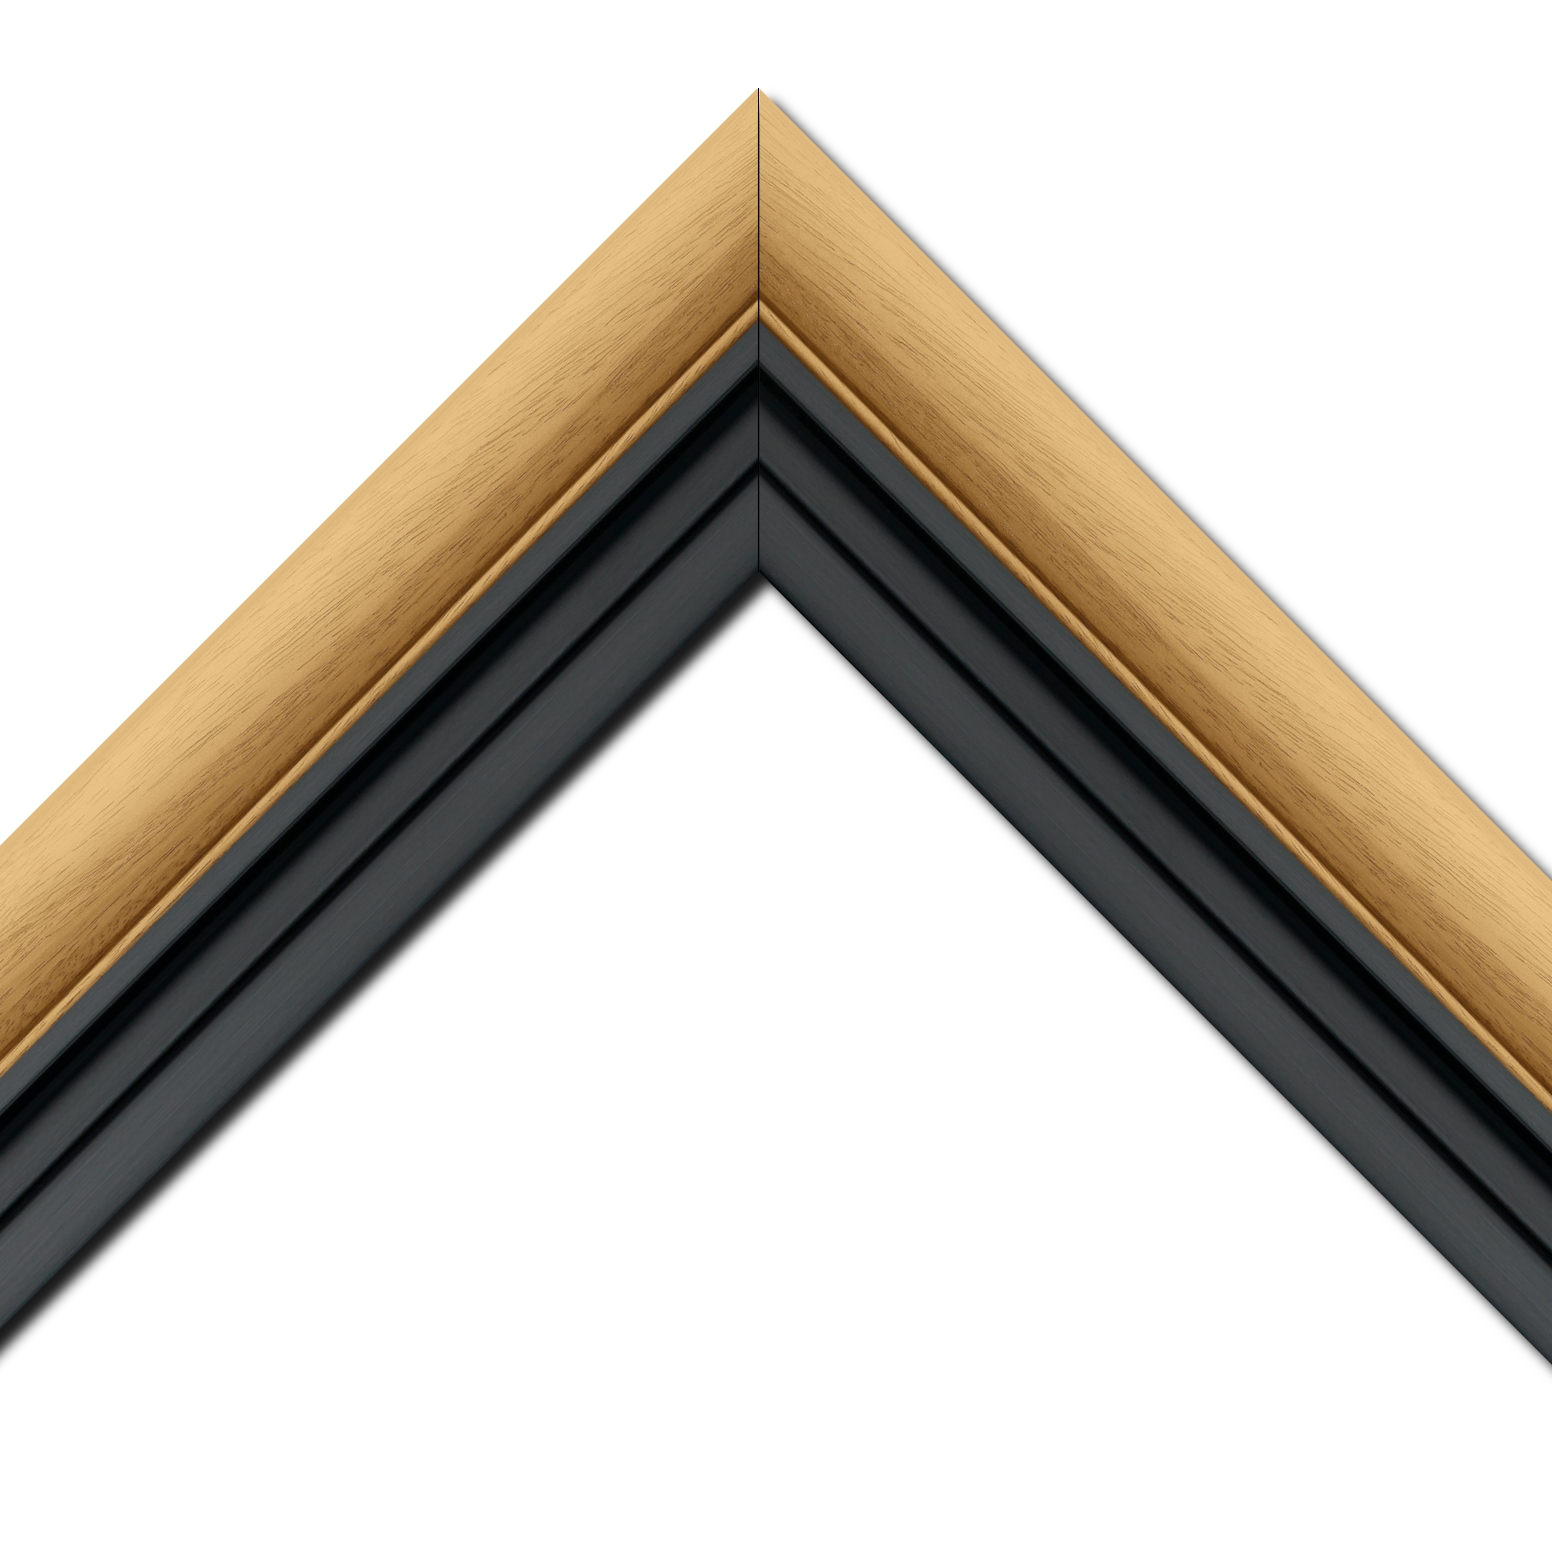 Baguette bois profil arrondi largeur 4.7cm couleur naturel satiné + bois caisse américaine profil escalier largeur 4.4cm noir mat   (spécialement conçu pour les châssis d'une épaisseur jusqu’à 2.5cm ) largeur total du cadre : 8.3cm